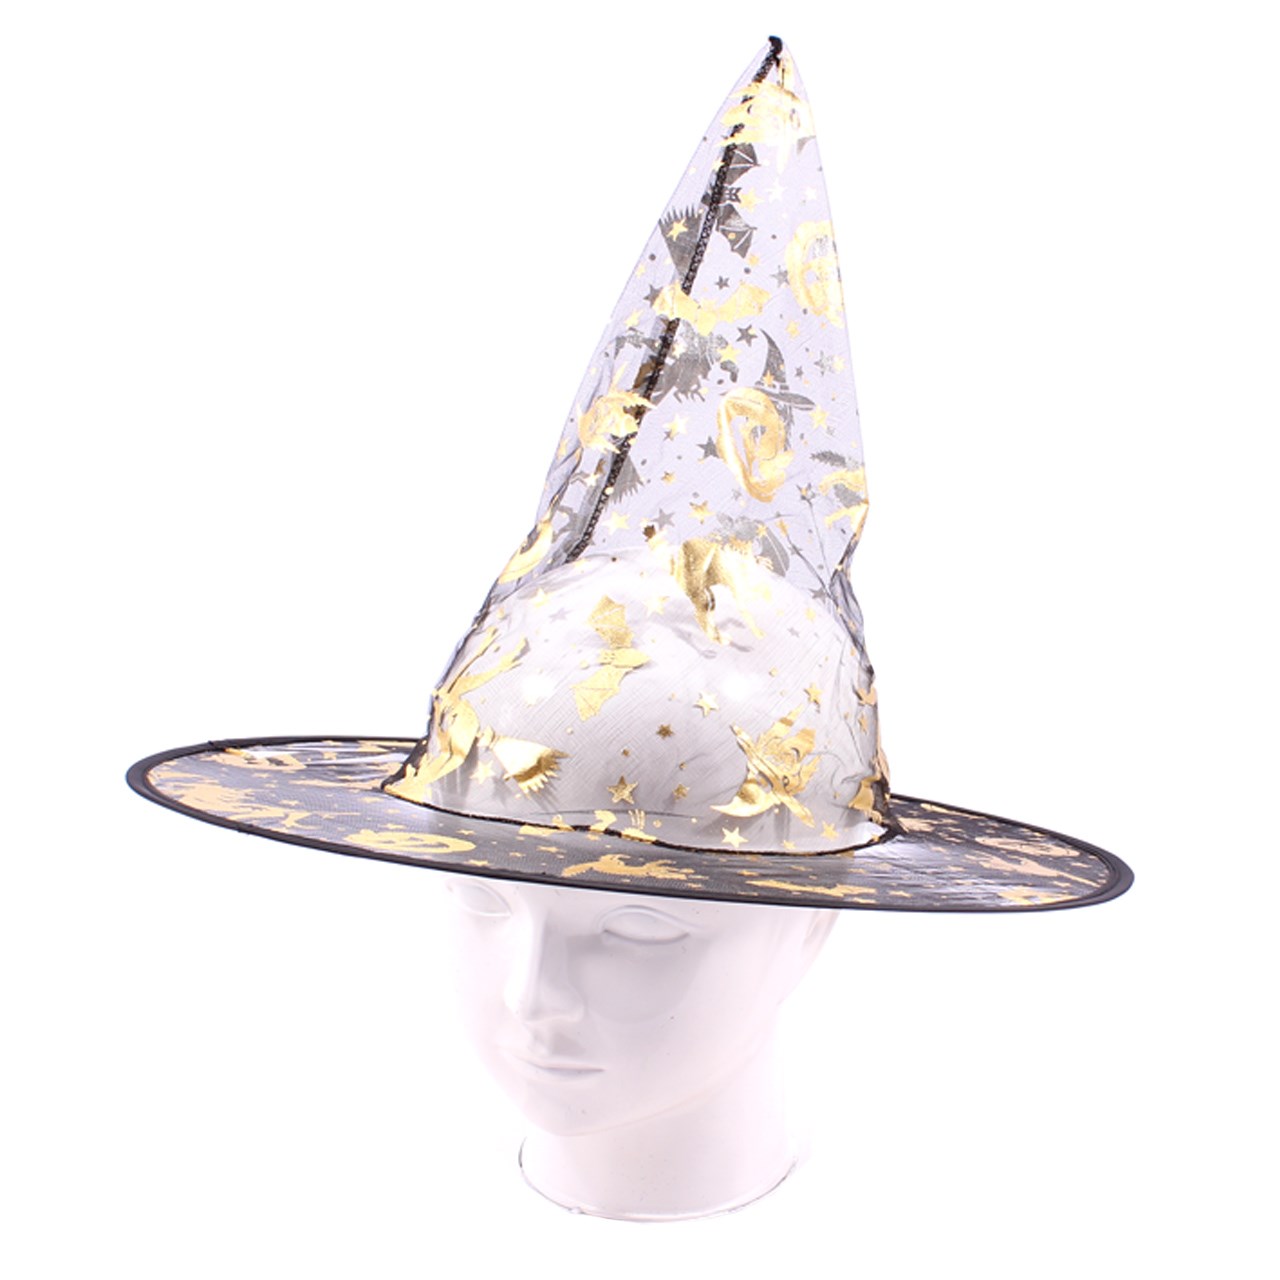 کلاه جادوگر مدل Lace 2